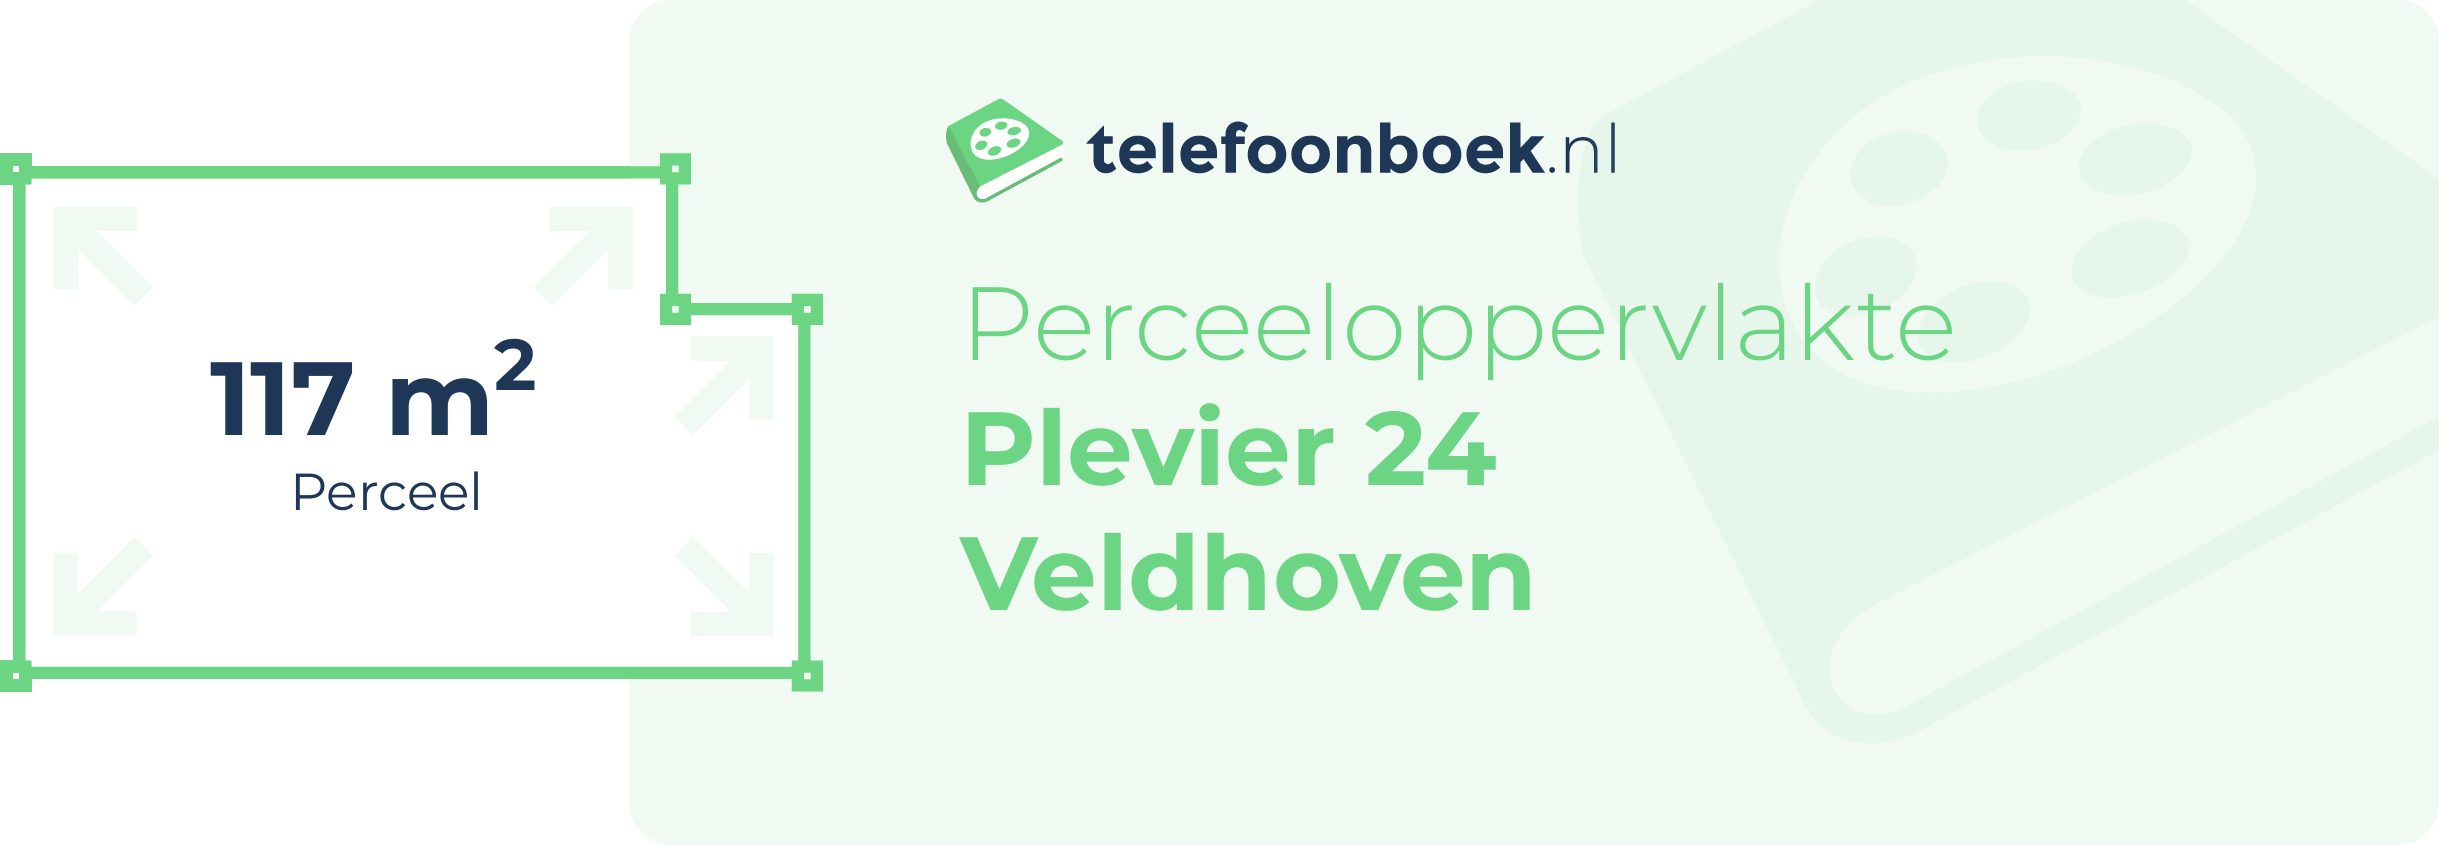 Perceeloppervlakte Plevier 24 Veldhoven